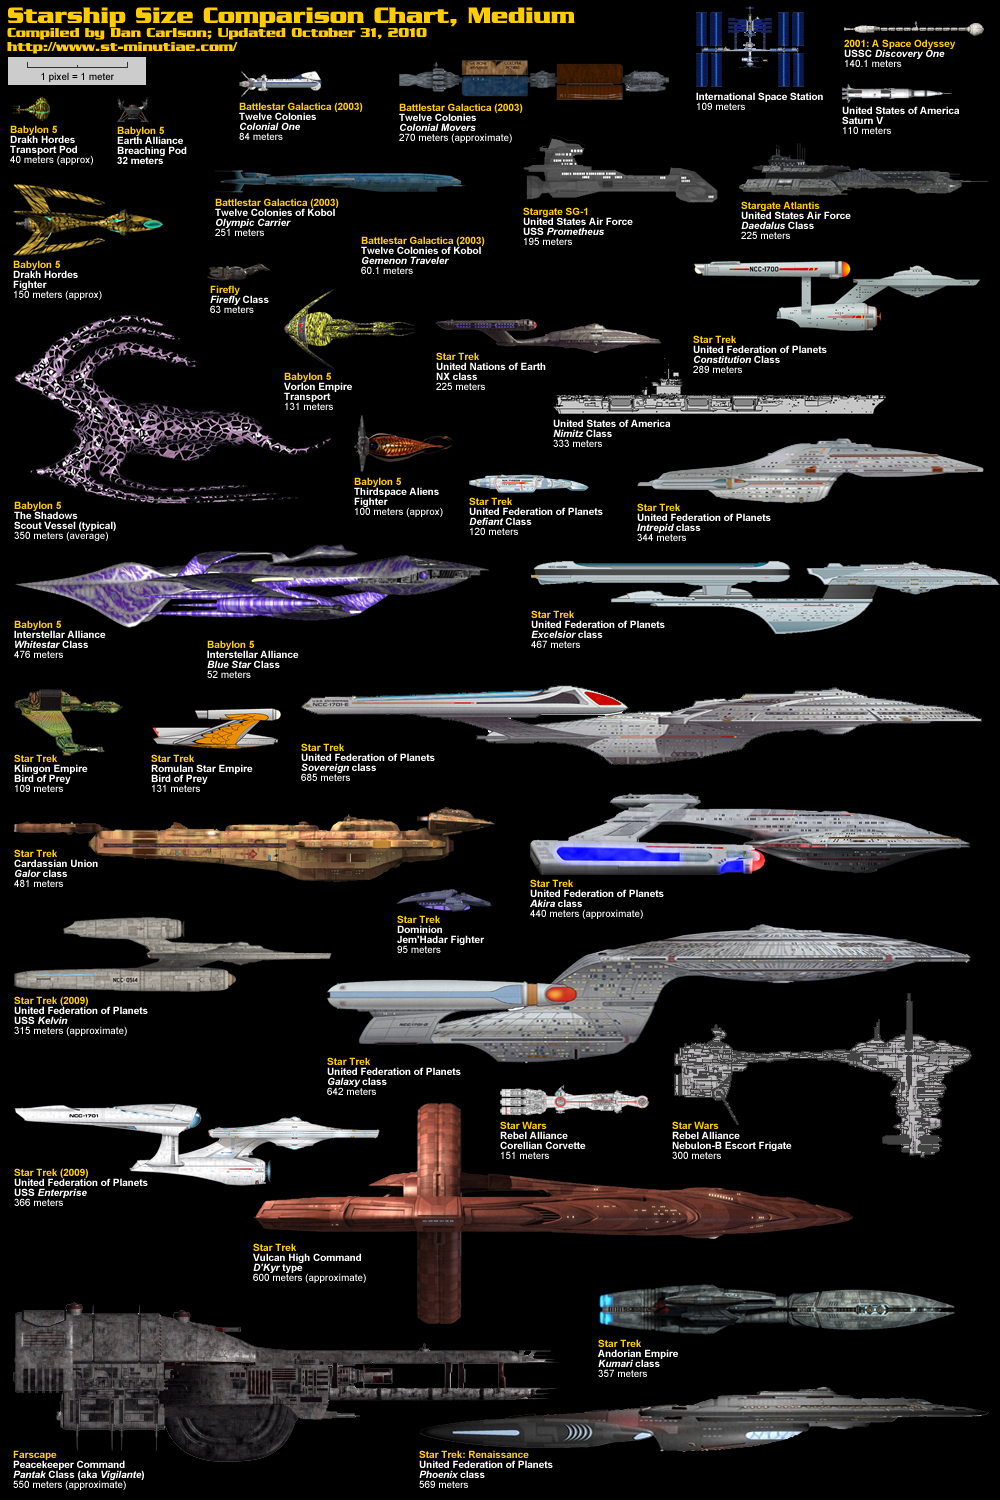 Sf映画に登場する宇宙船のサイズ比較画像 サイズブログ